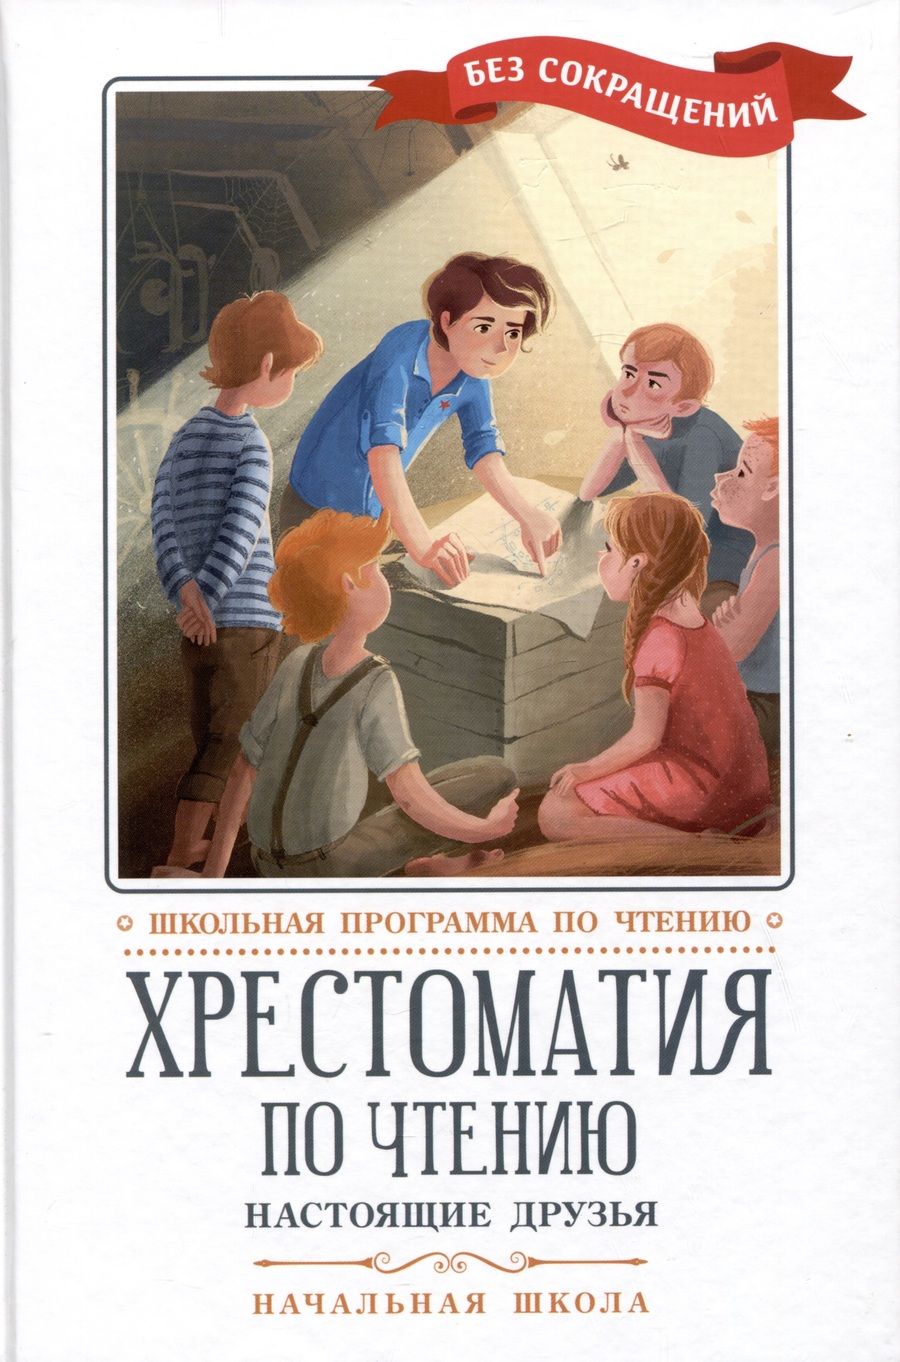 Обложка книги "Перро, Мамин-Сибиряк, Киплинг: Хрестоматия по чтению. Настоящие друзья. Начальная школа"